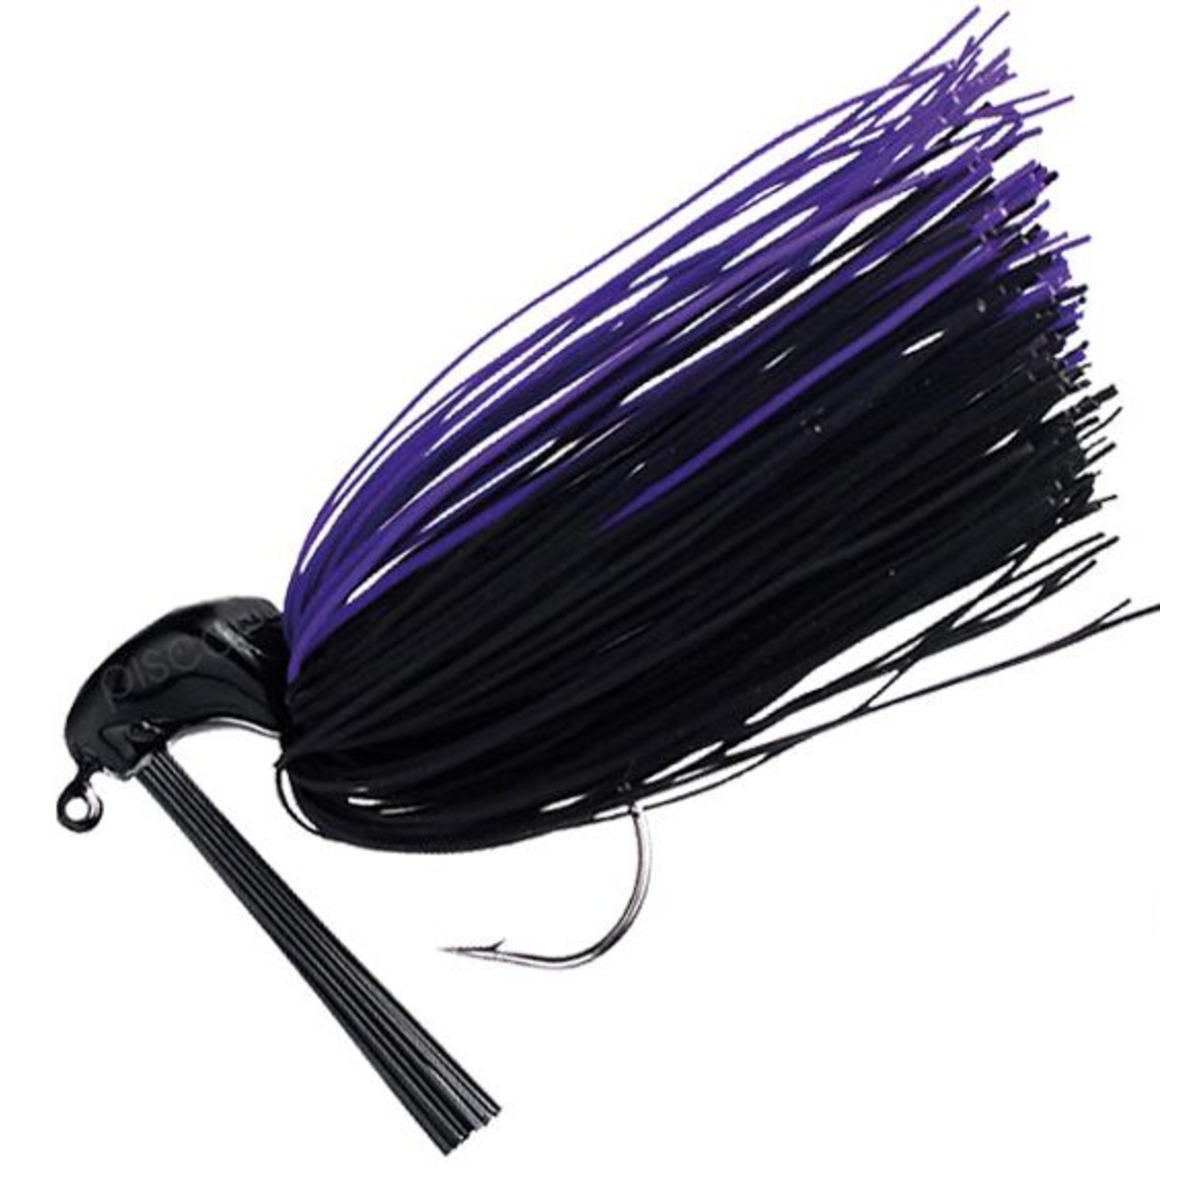 Seika Jig - 1-2 oz - Black-Violet         